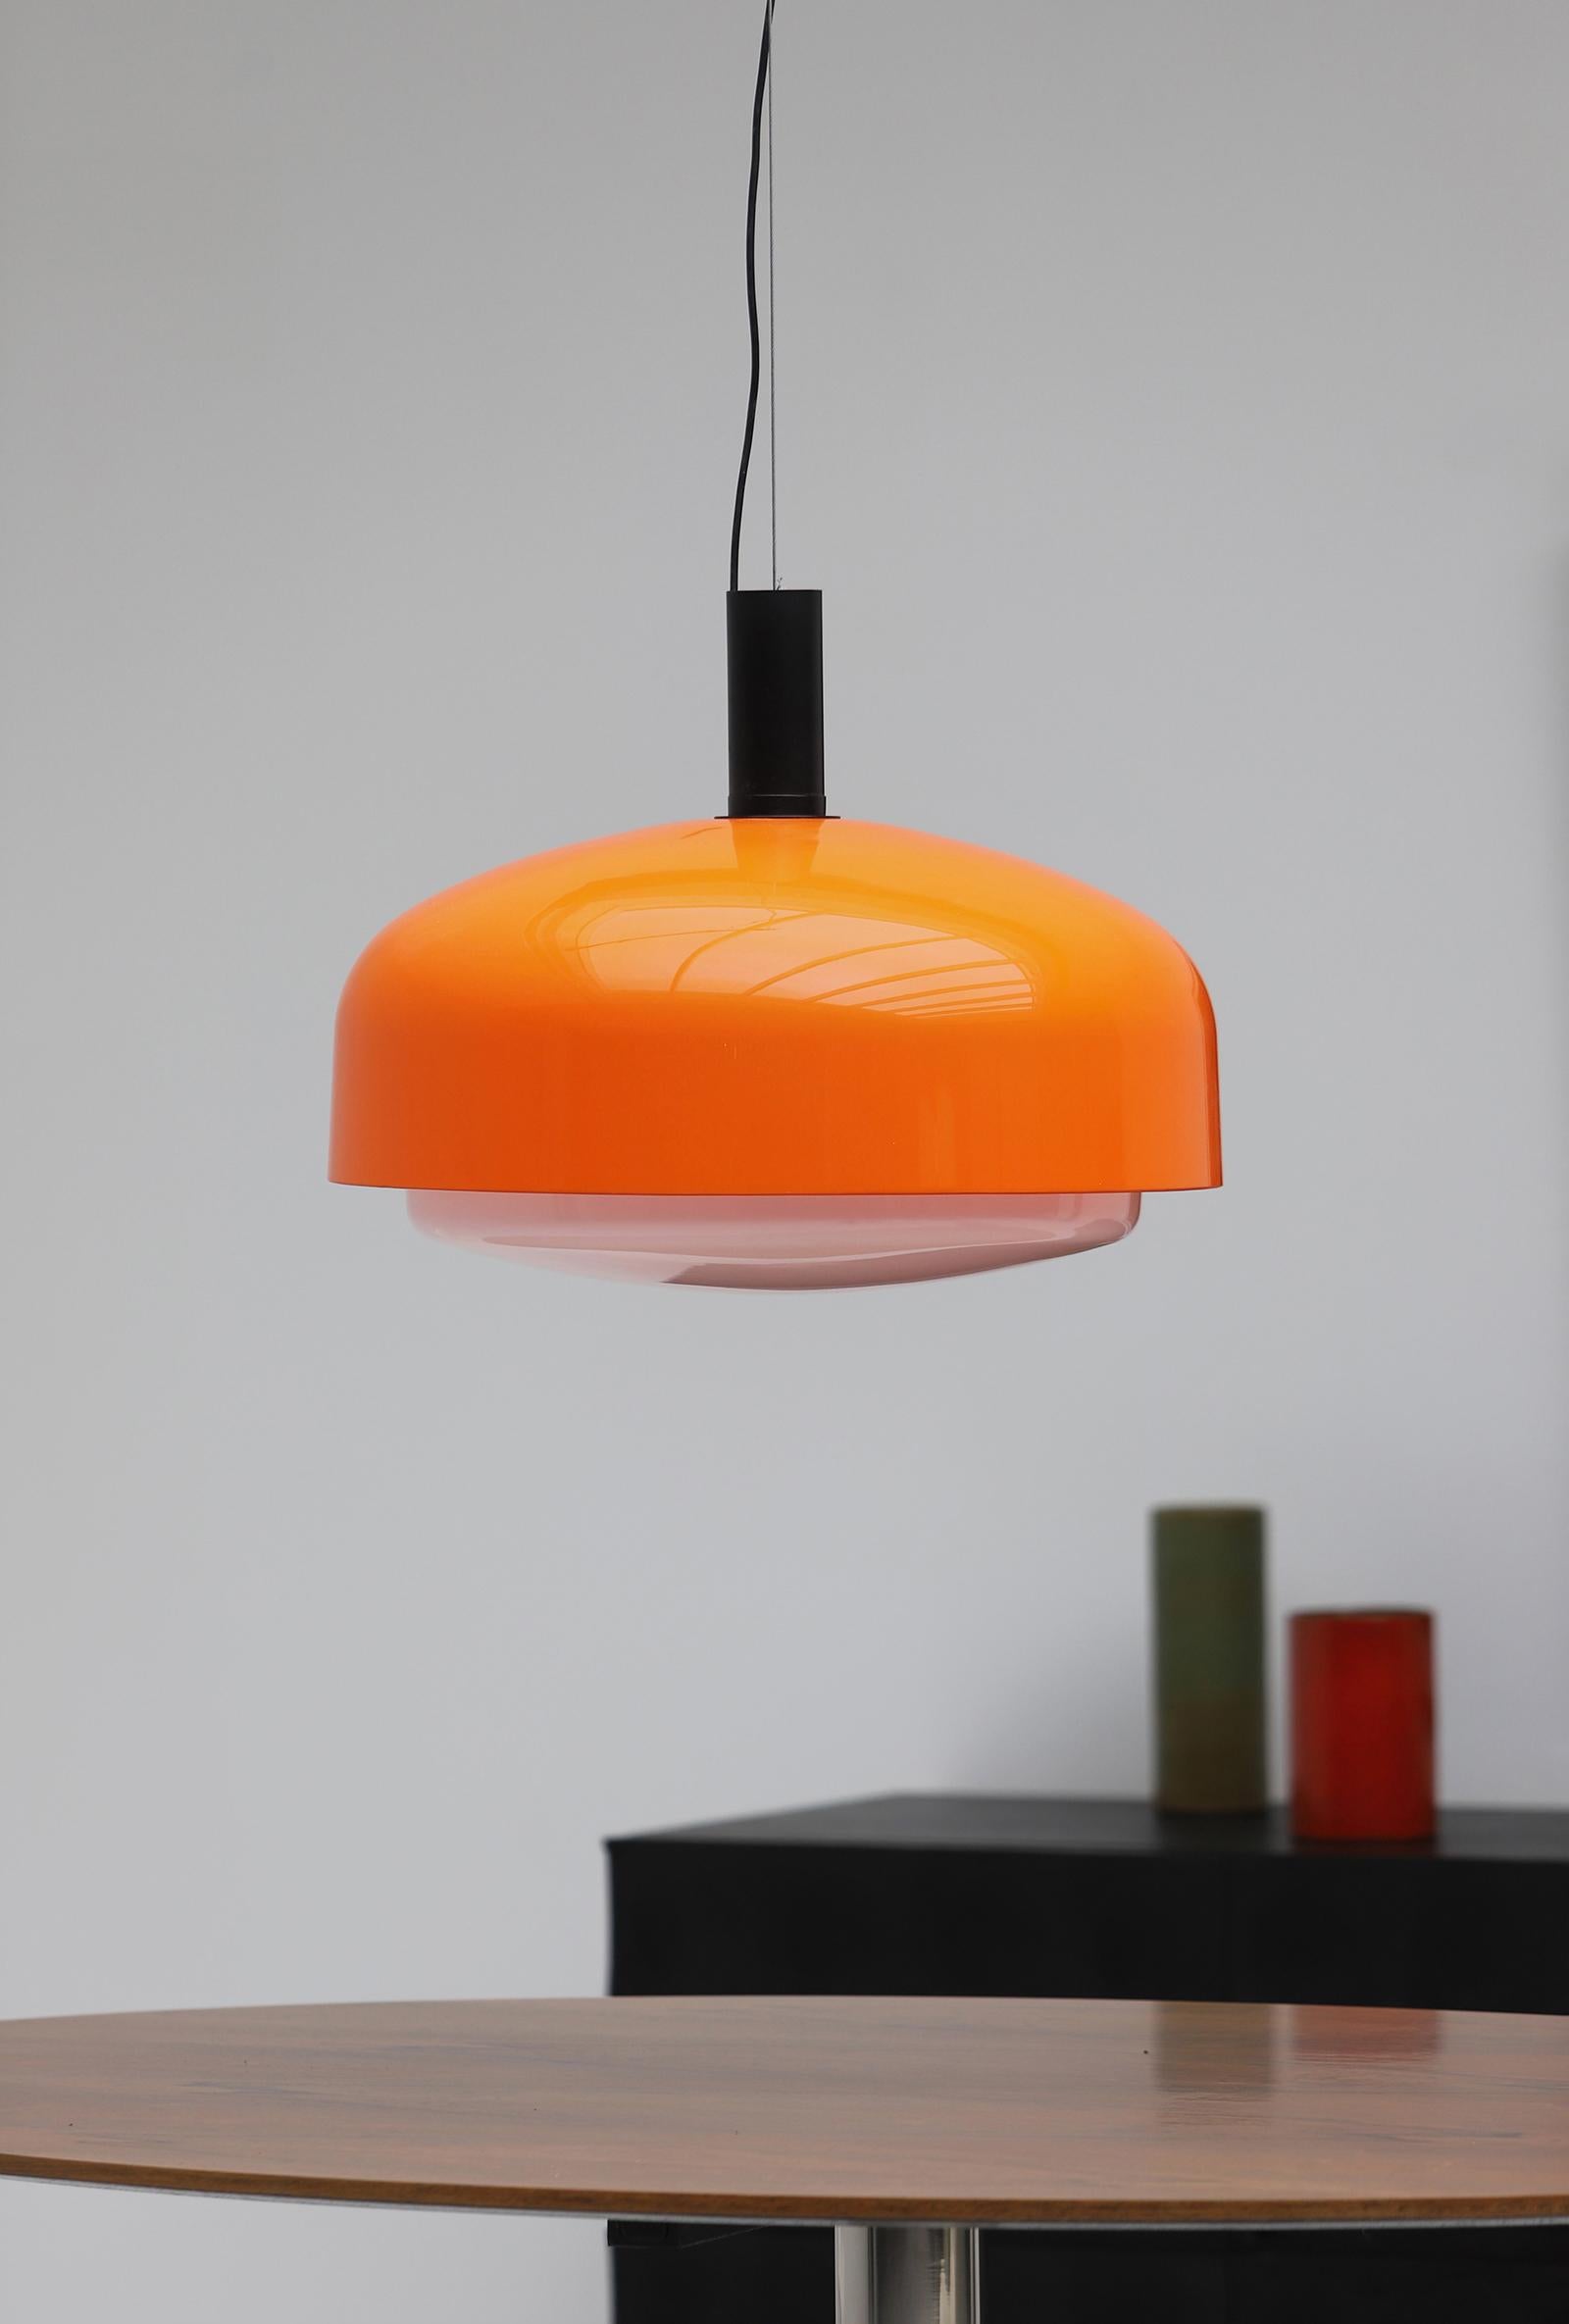 Grande lampe en attente d'Eugenio Gentili Tedeschi modèle KD 62 conçue pour Kartell en 1965. La lampe est dotée d'un abat-jour orange et blanc en acrylique et est finie avec des détails en métal. Cette grande lampe suspendue est en très bon état,